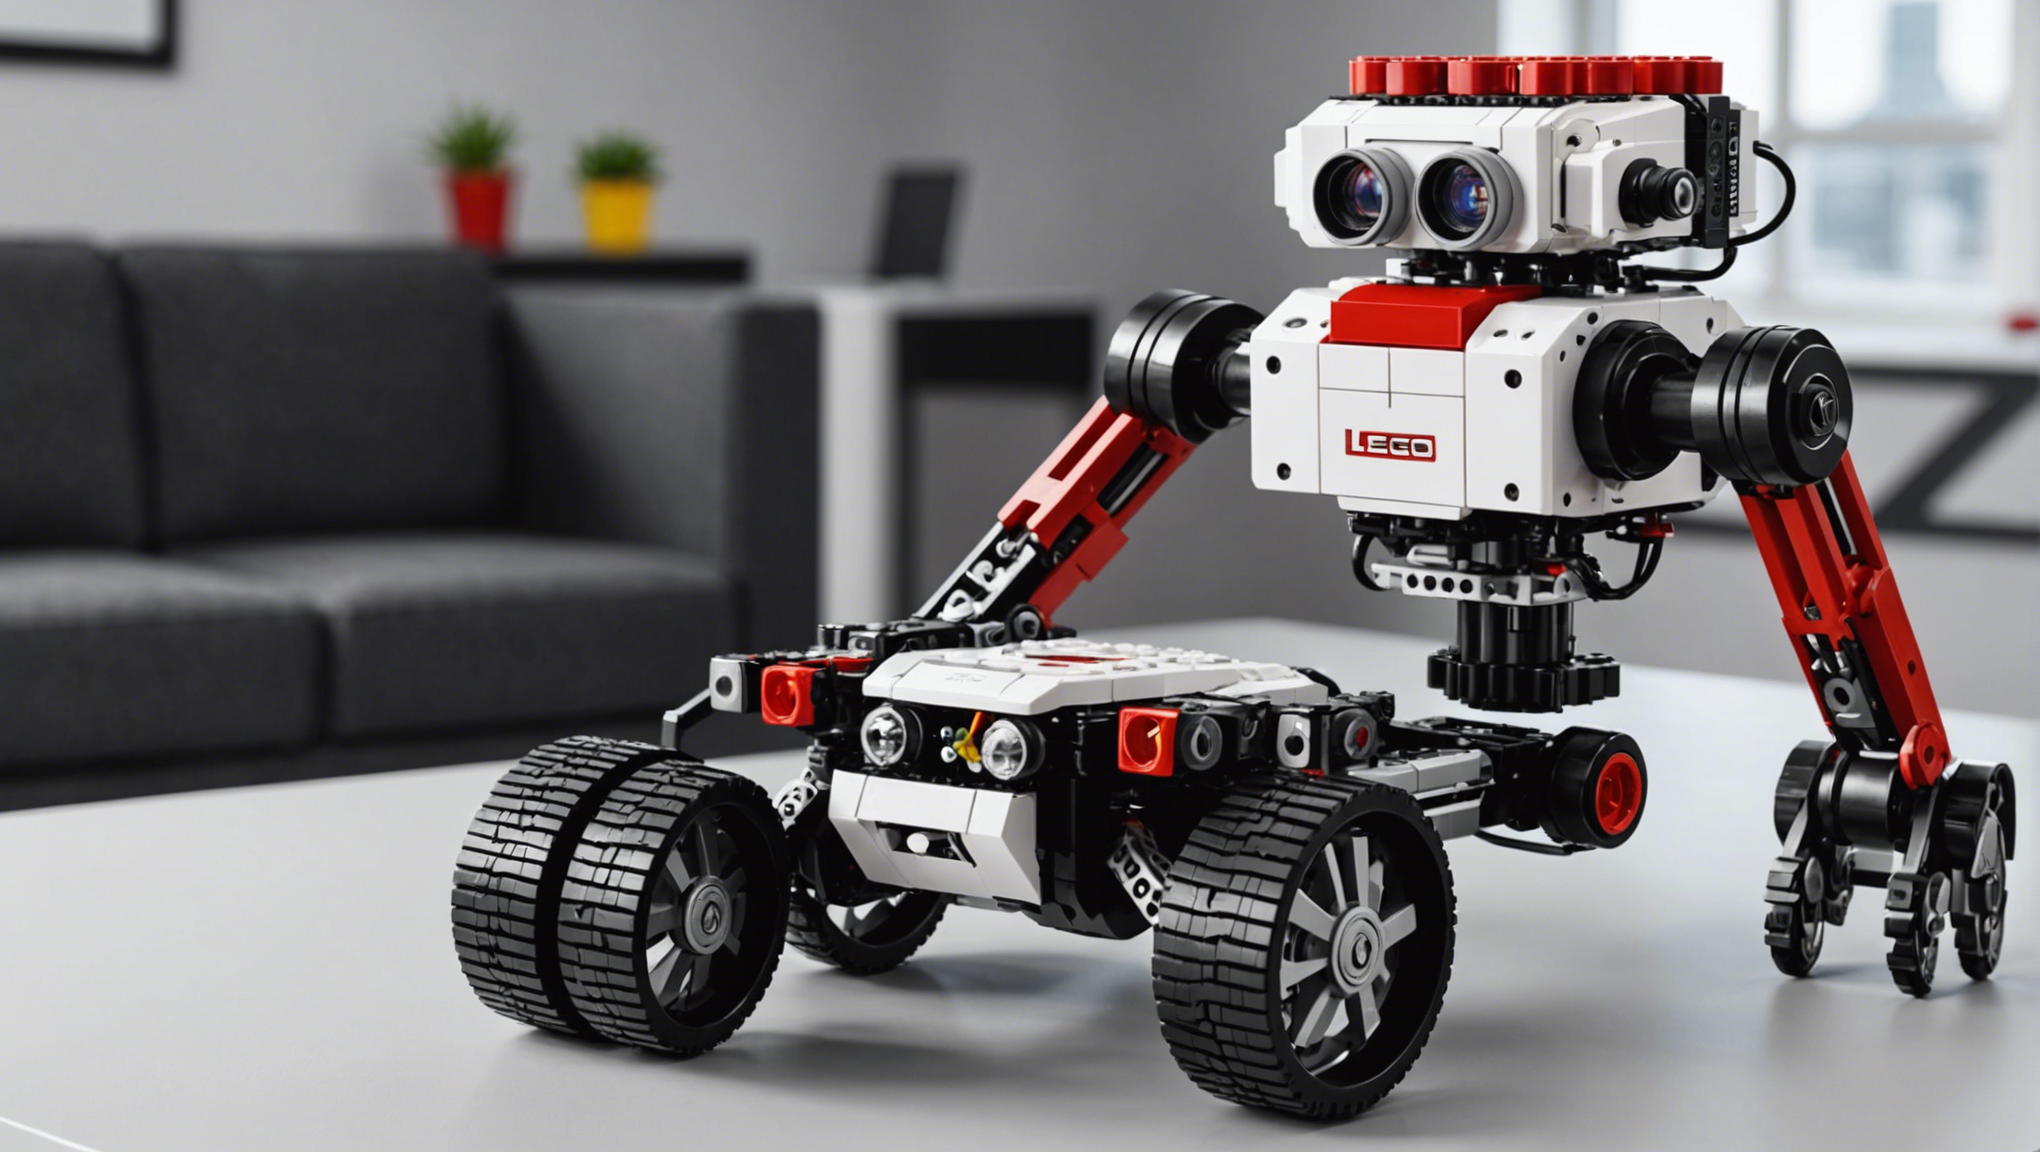 découvrez le robot programmable lego mindstorms ev3 maintenant disponible et en stock en france chez génération robots